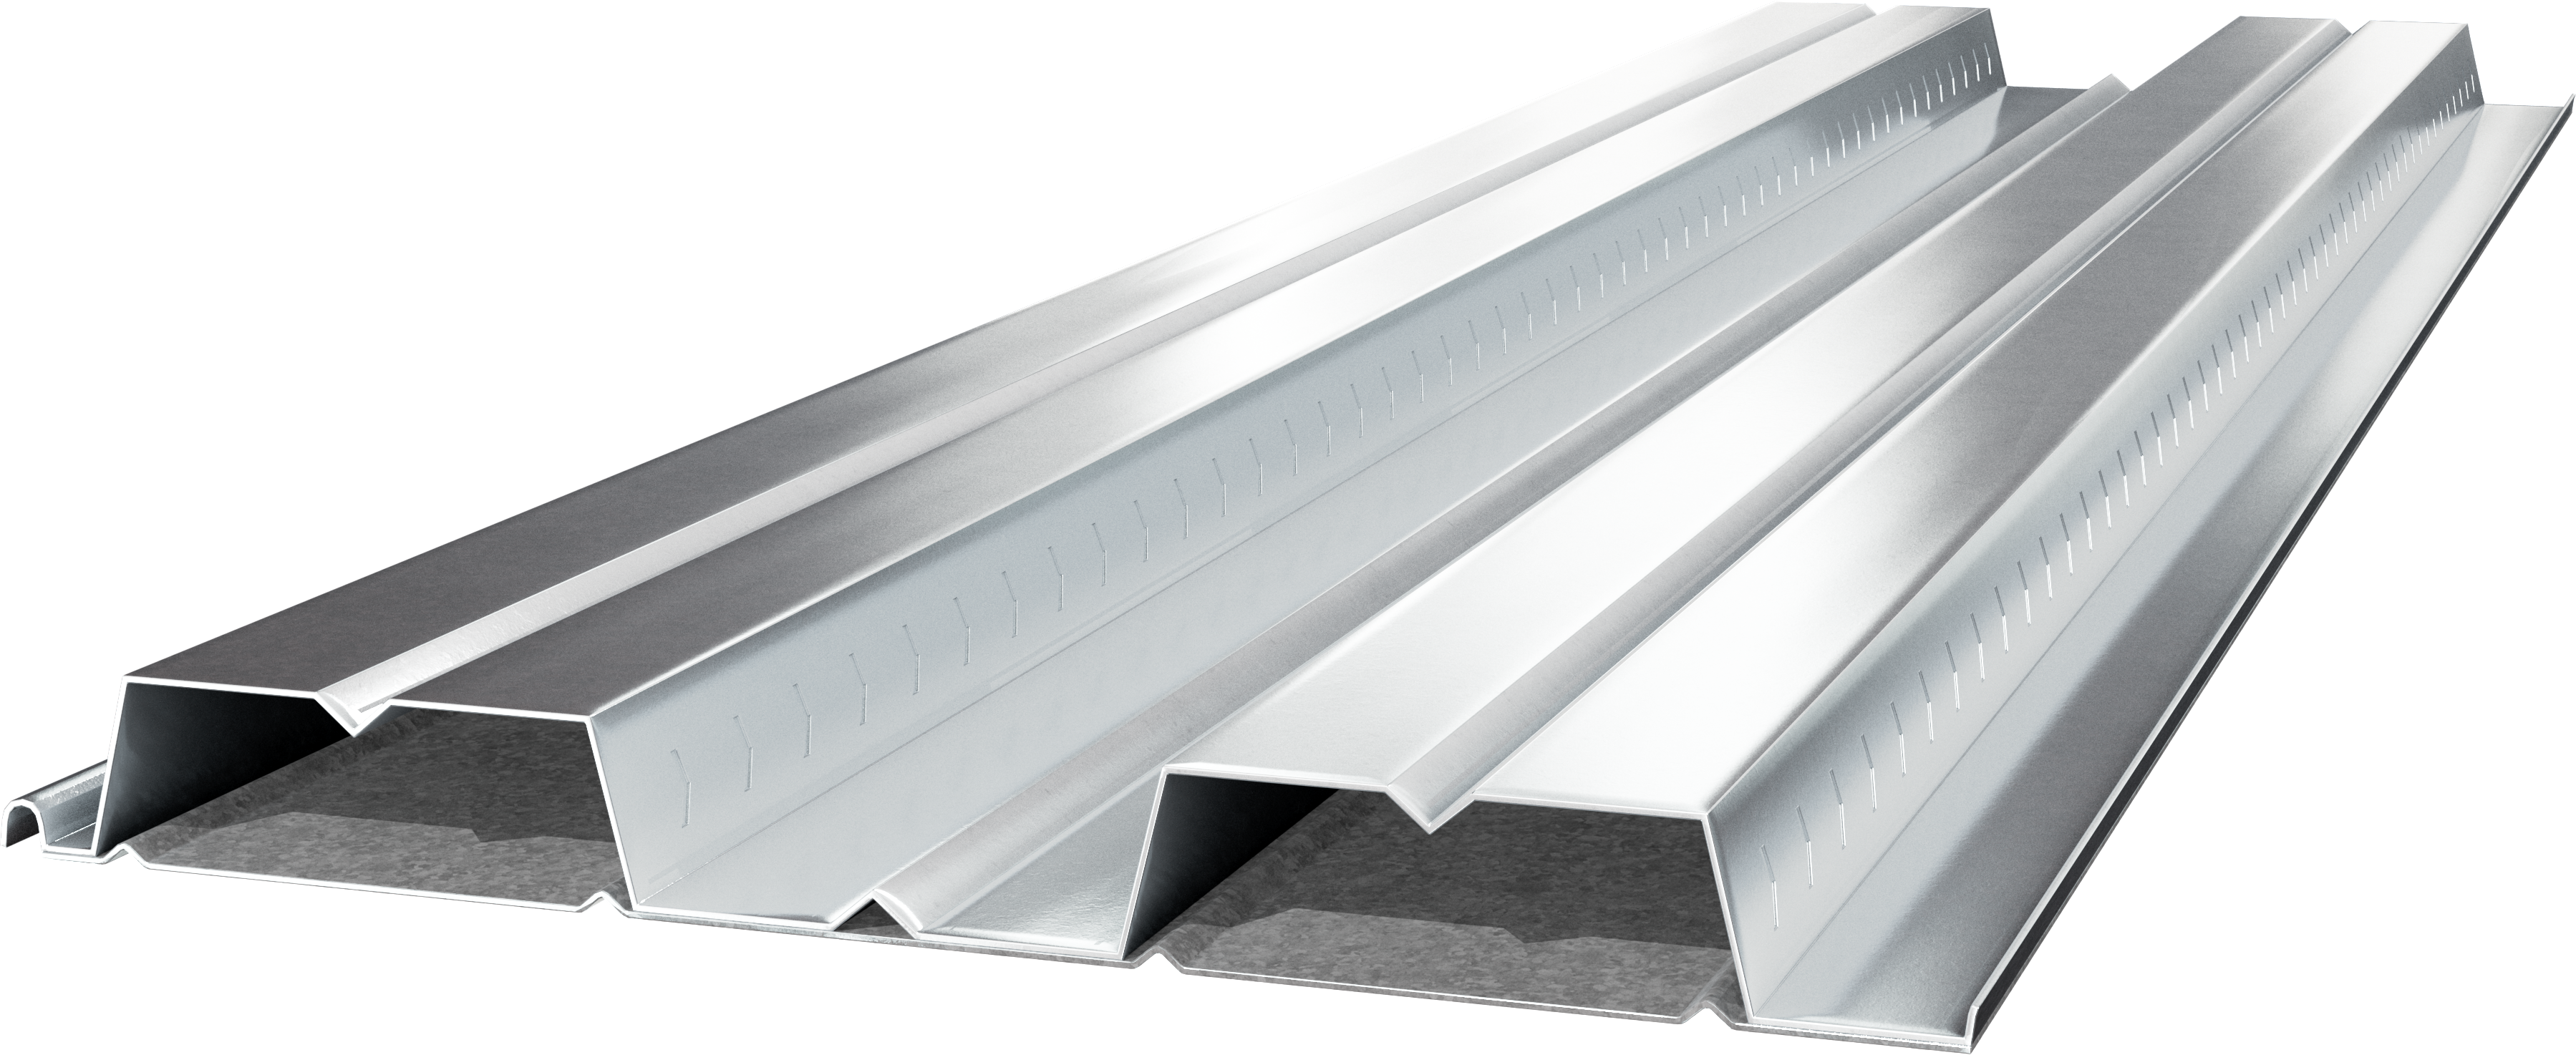 2.0 Cellular Composite Steel Floor Deck | Metal Deck | Cordeck